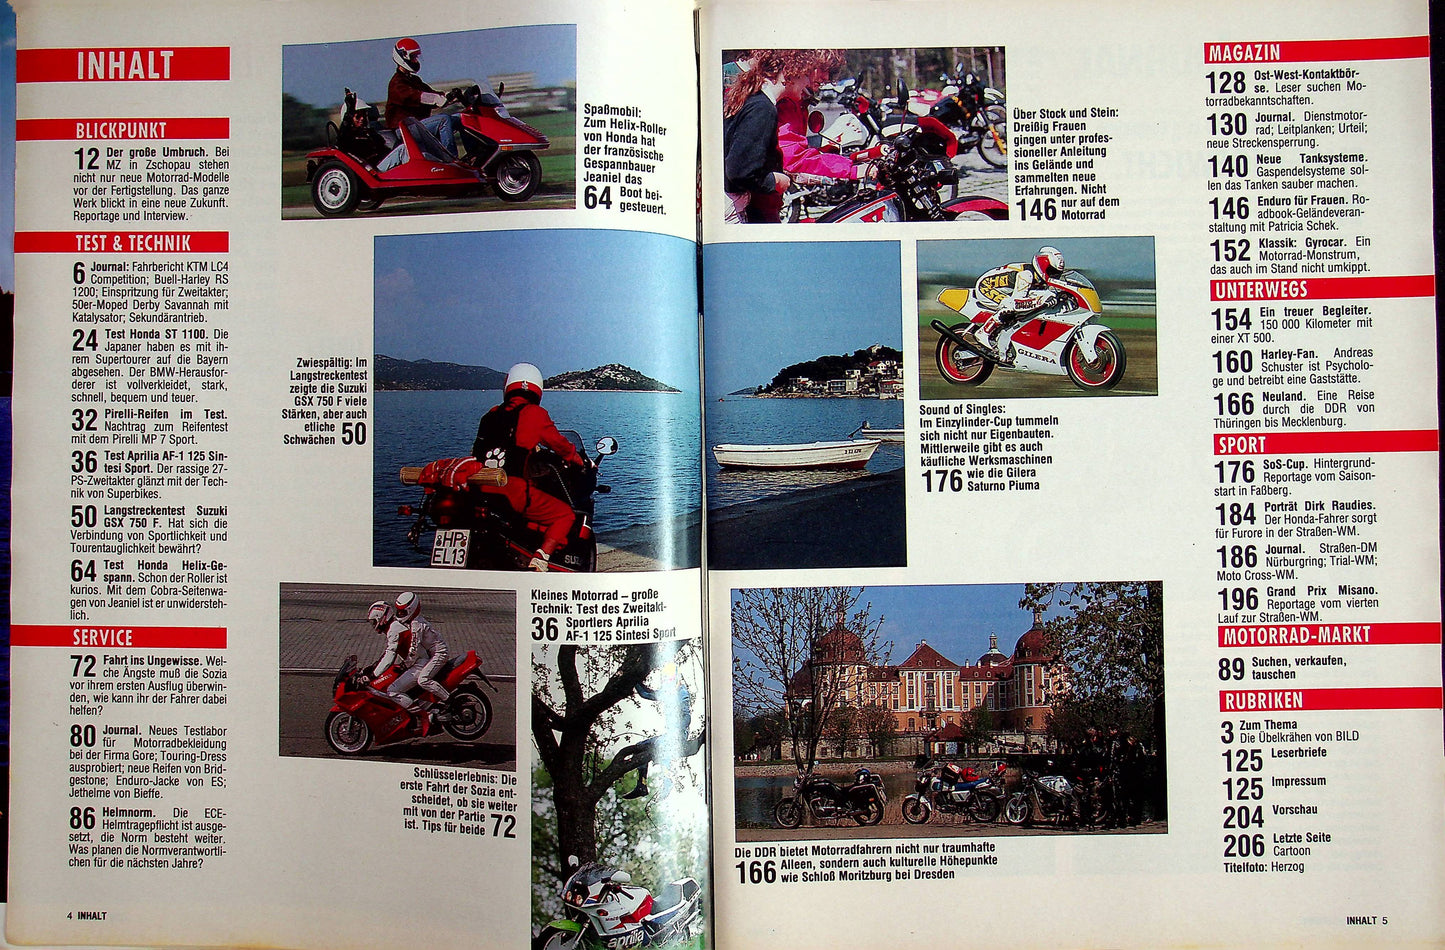 Motorrad 12/1990